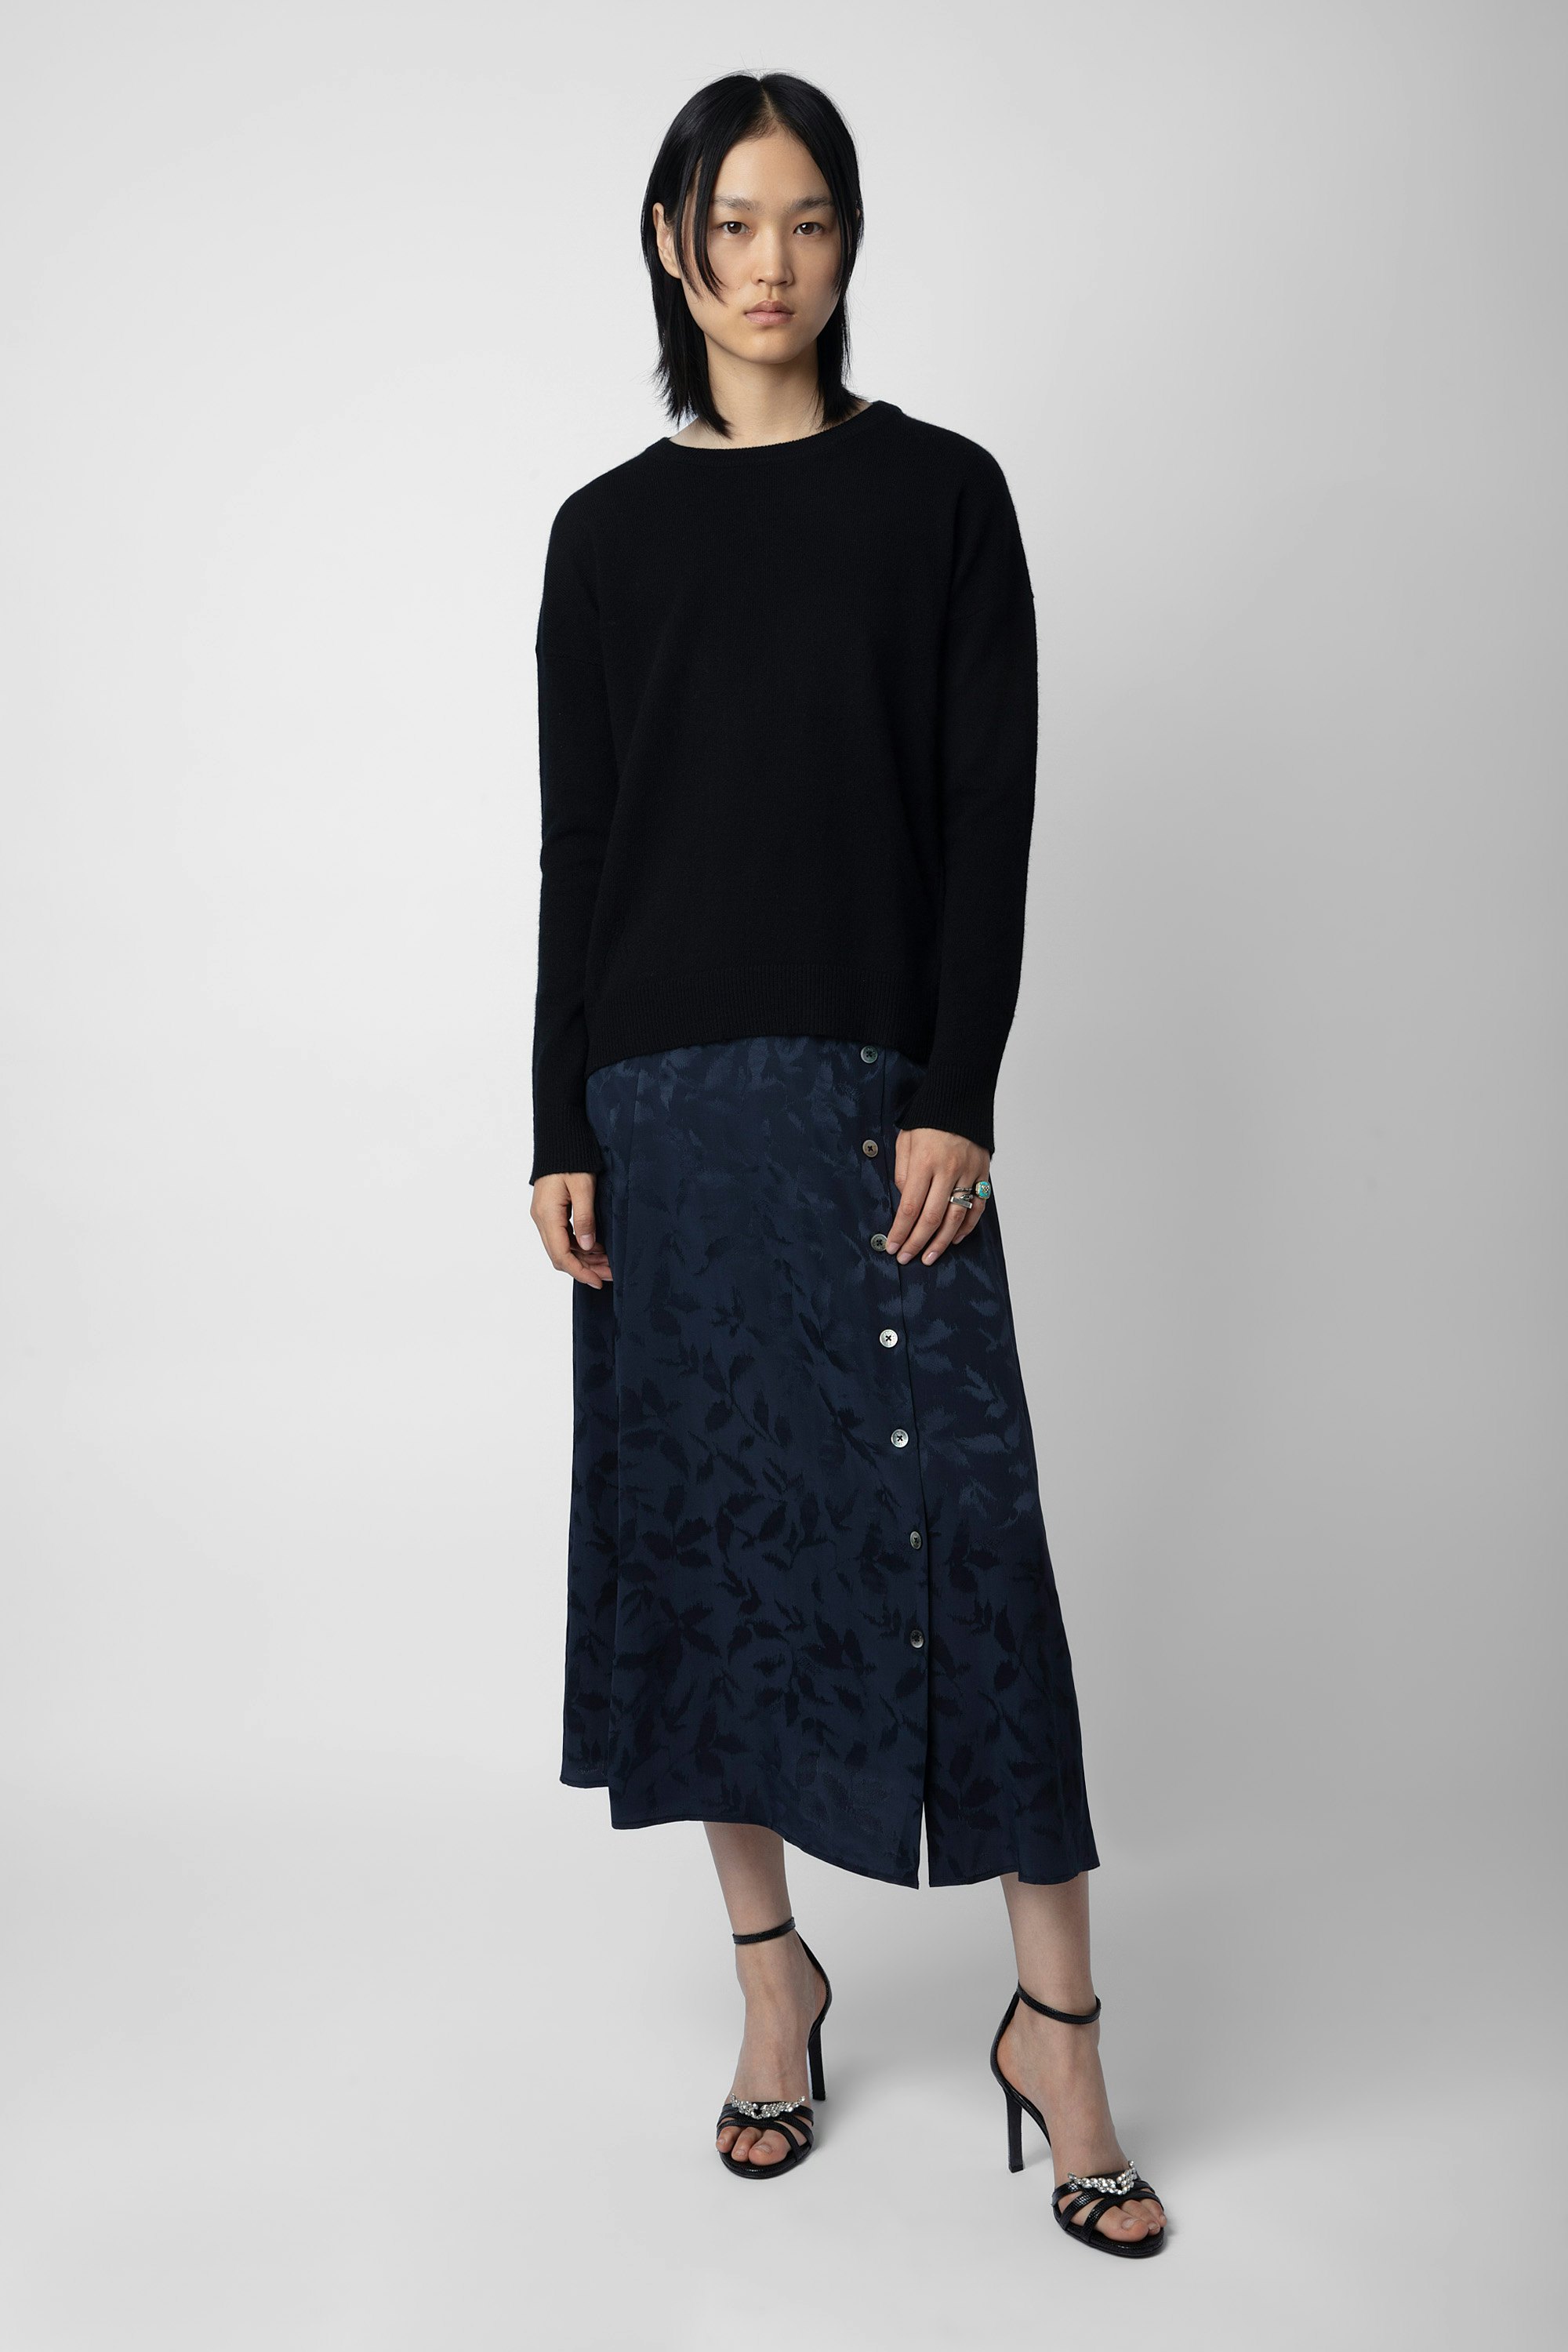 June Silk Jacquard Skirt - Women’s long navy blue silk buttoned skirt with jacquard star.